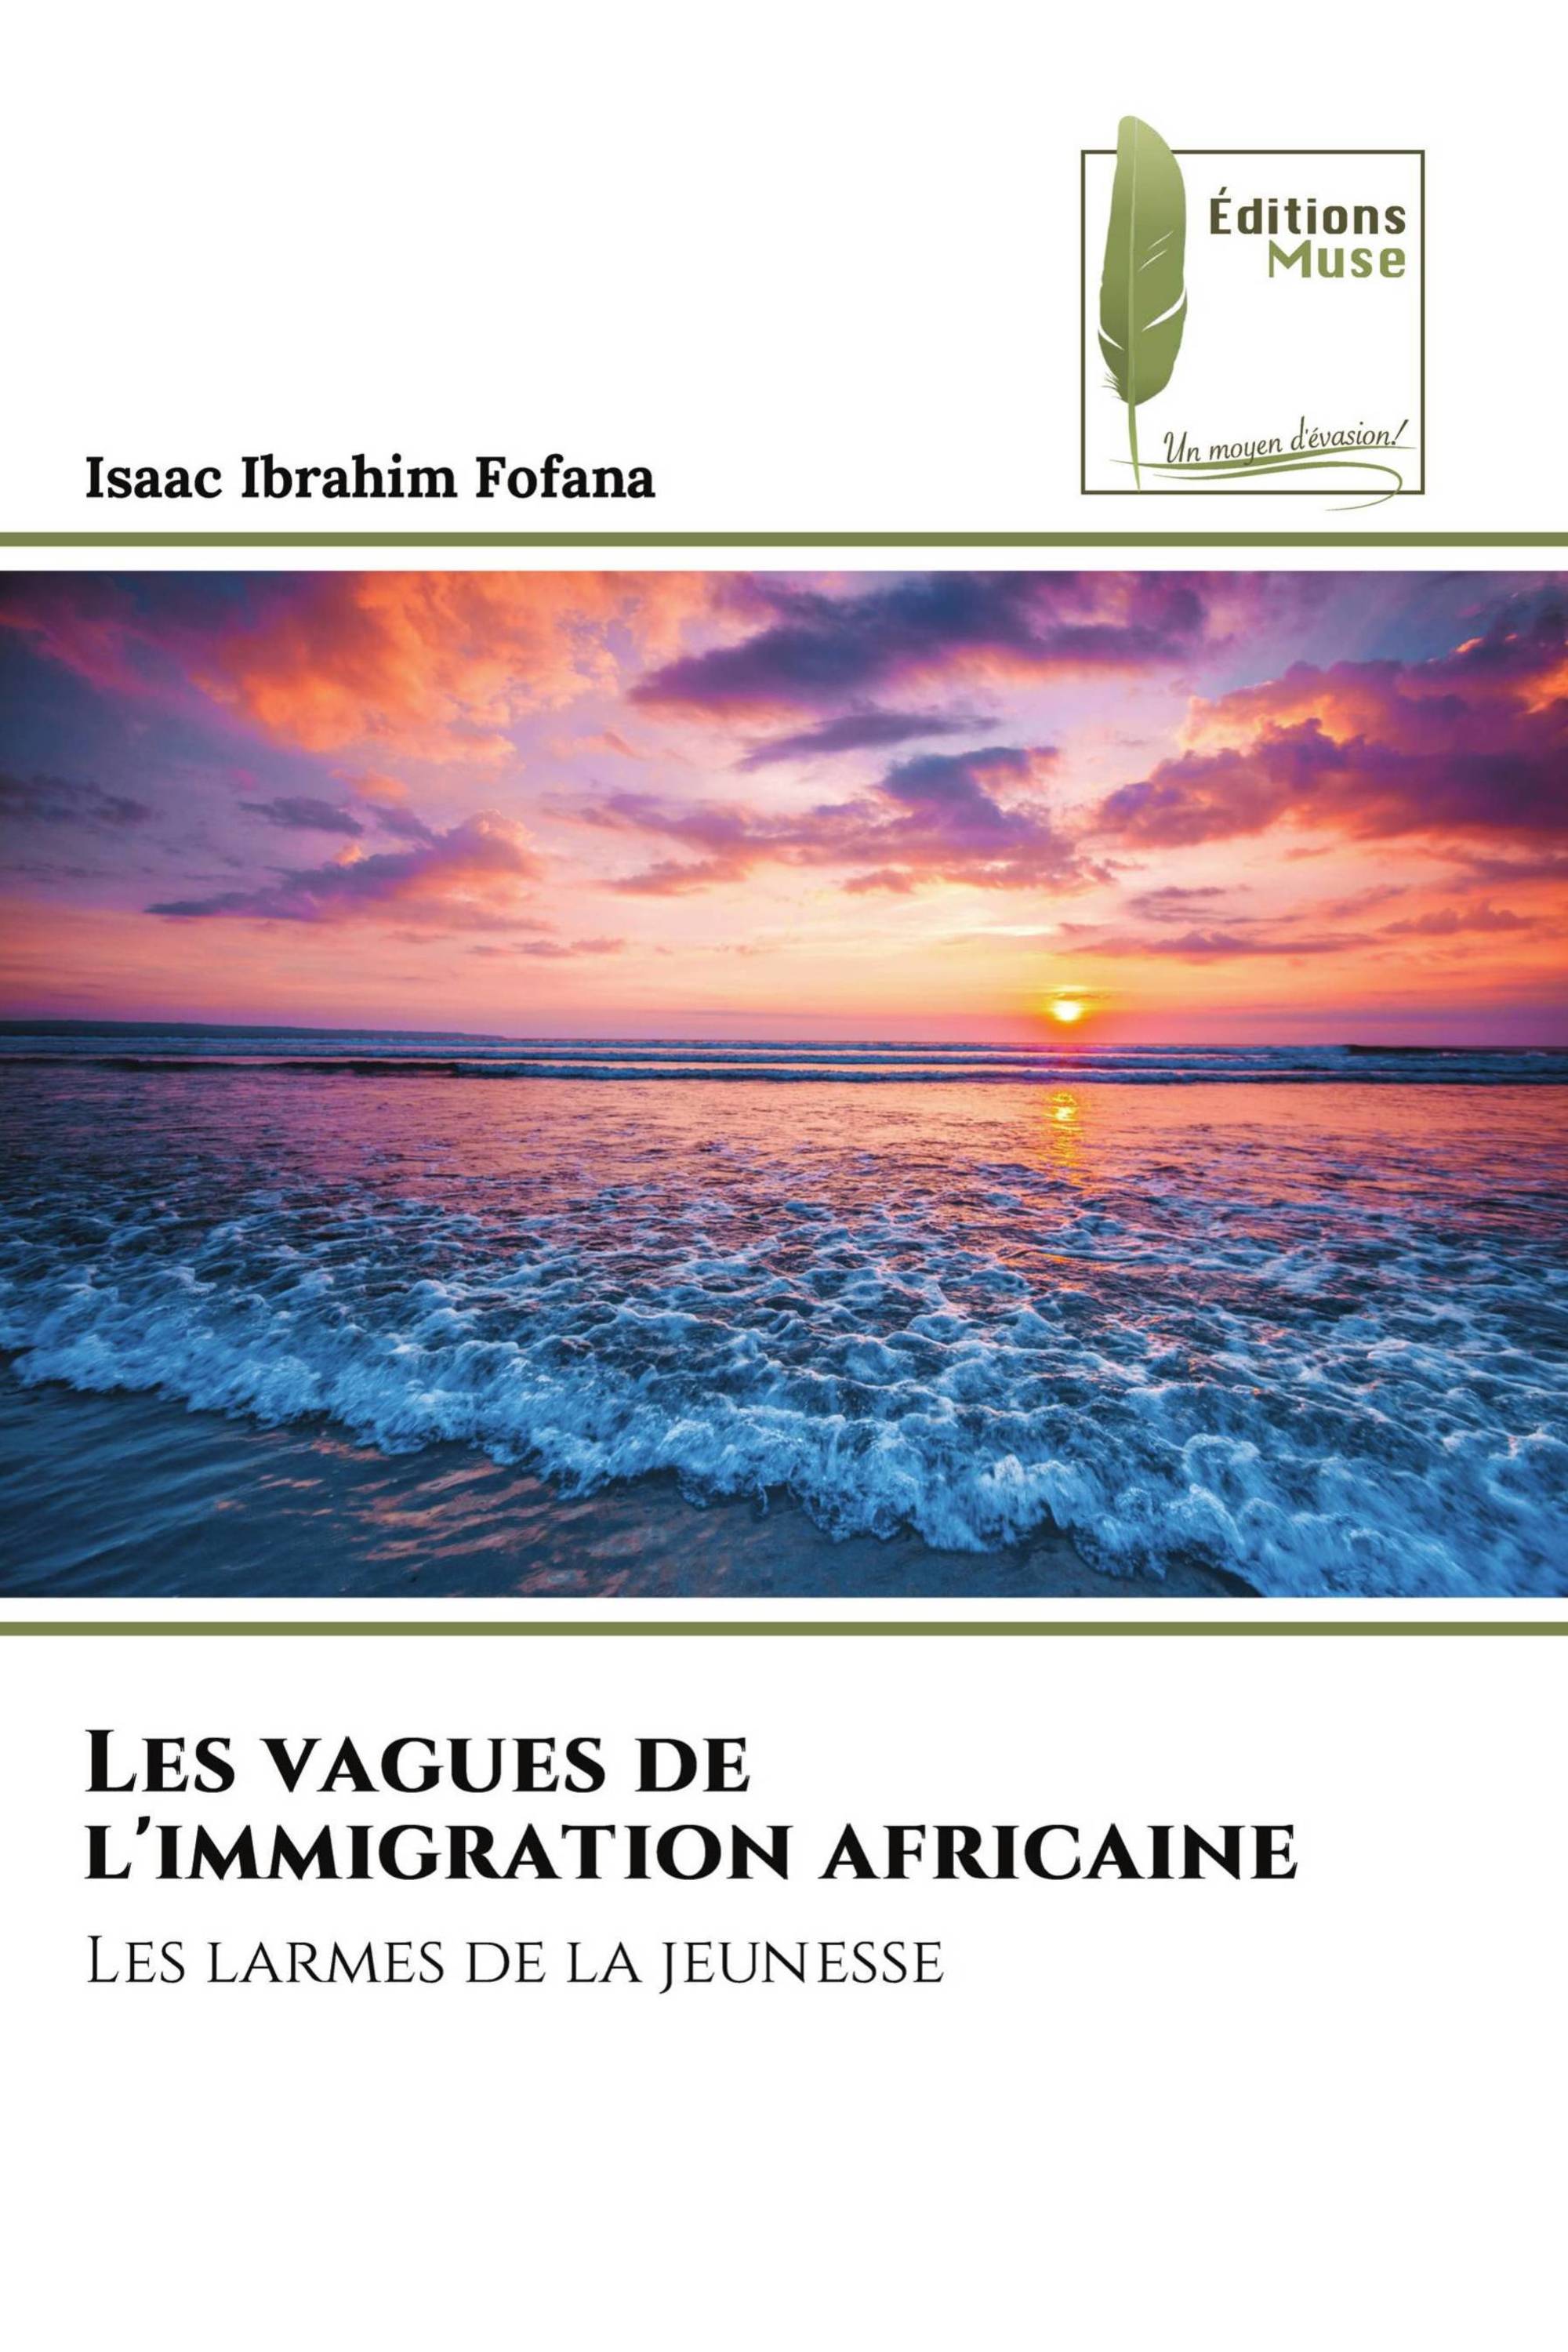 Les vagues de l'immigration africaine